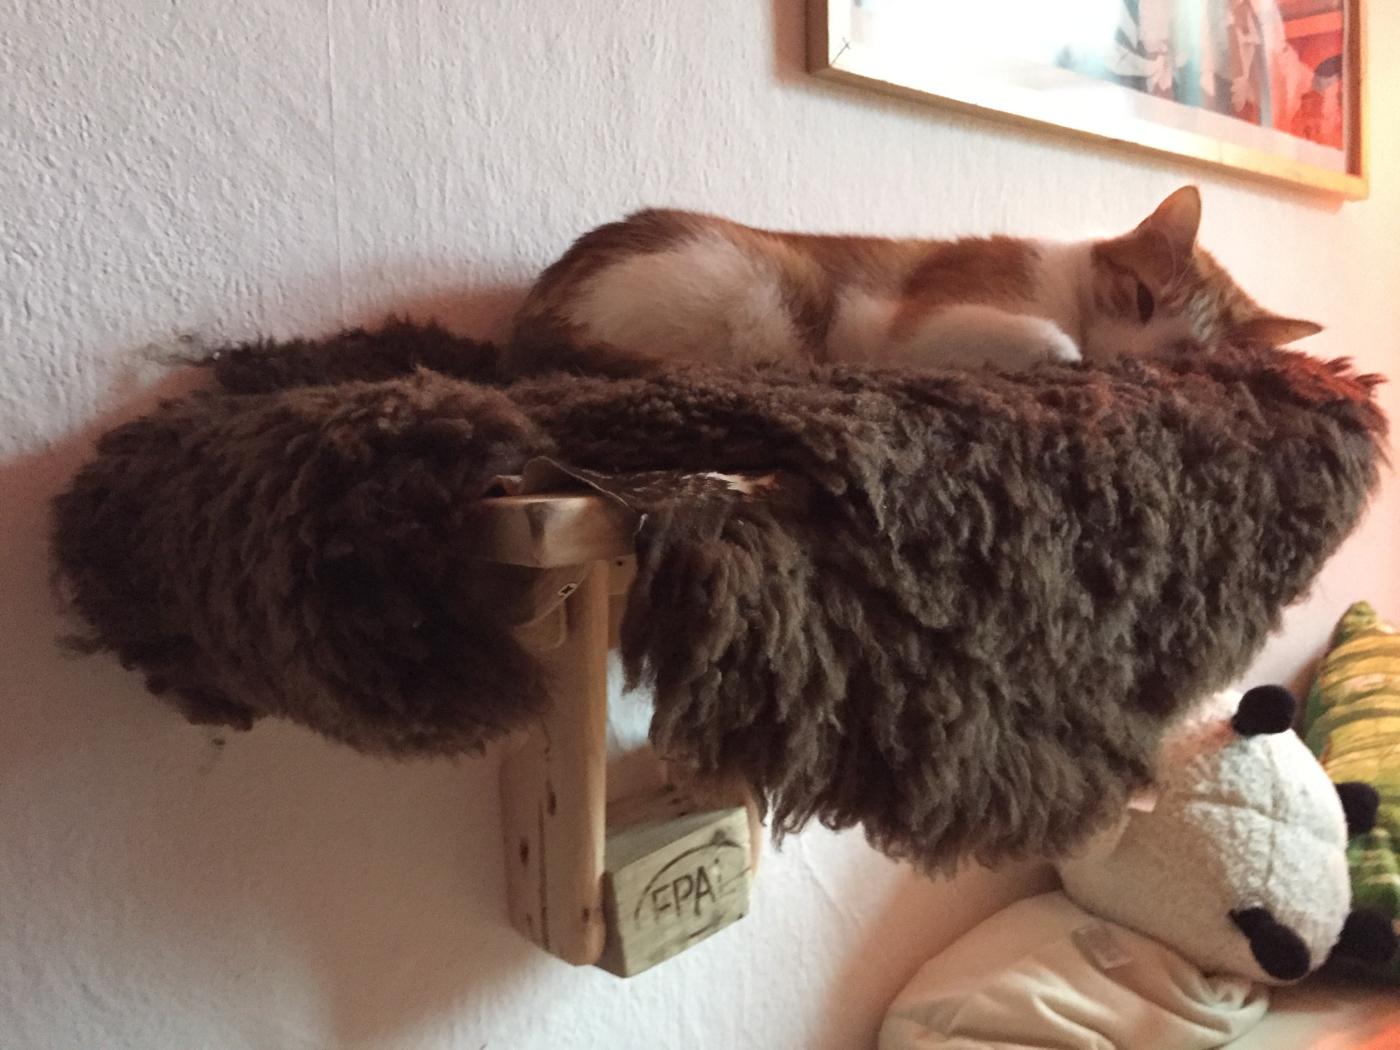 Katzenhochbett, Probeschlafen durch Besitzer